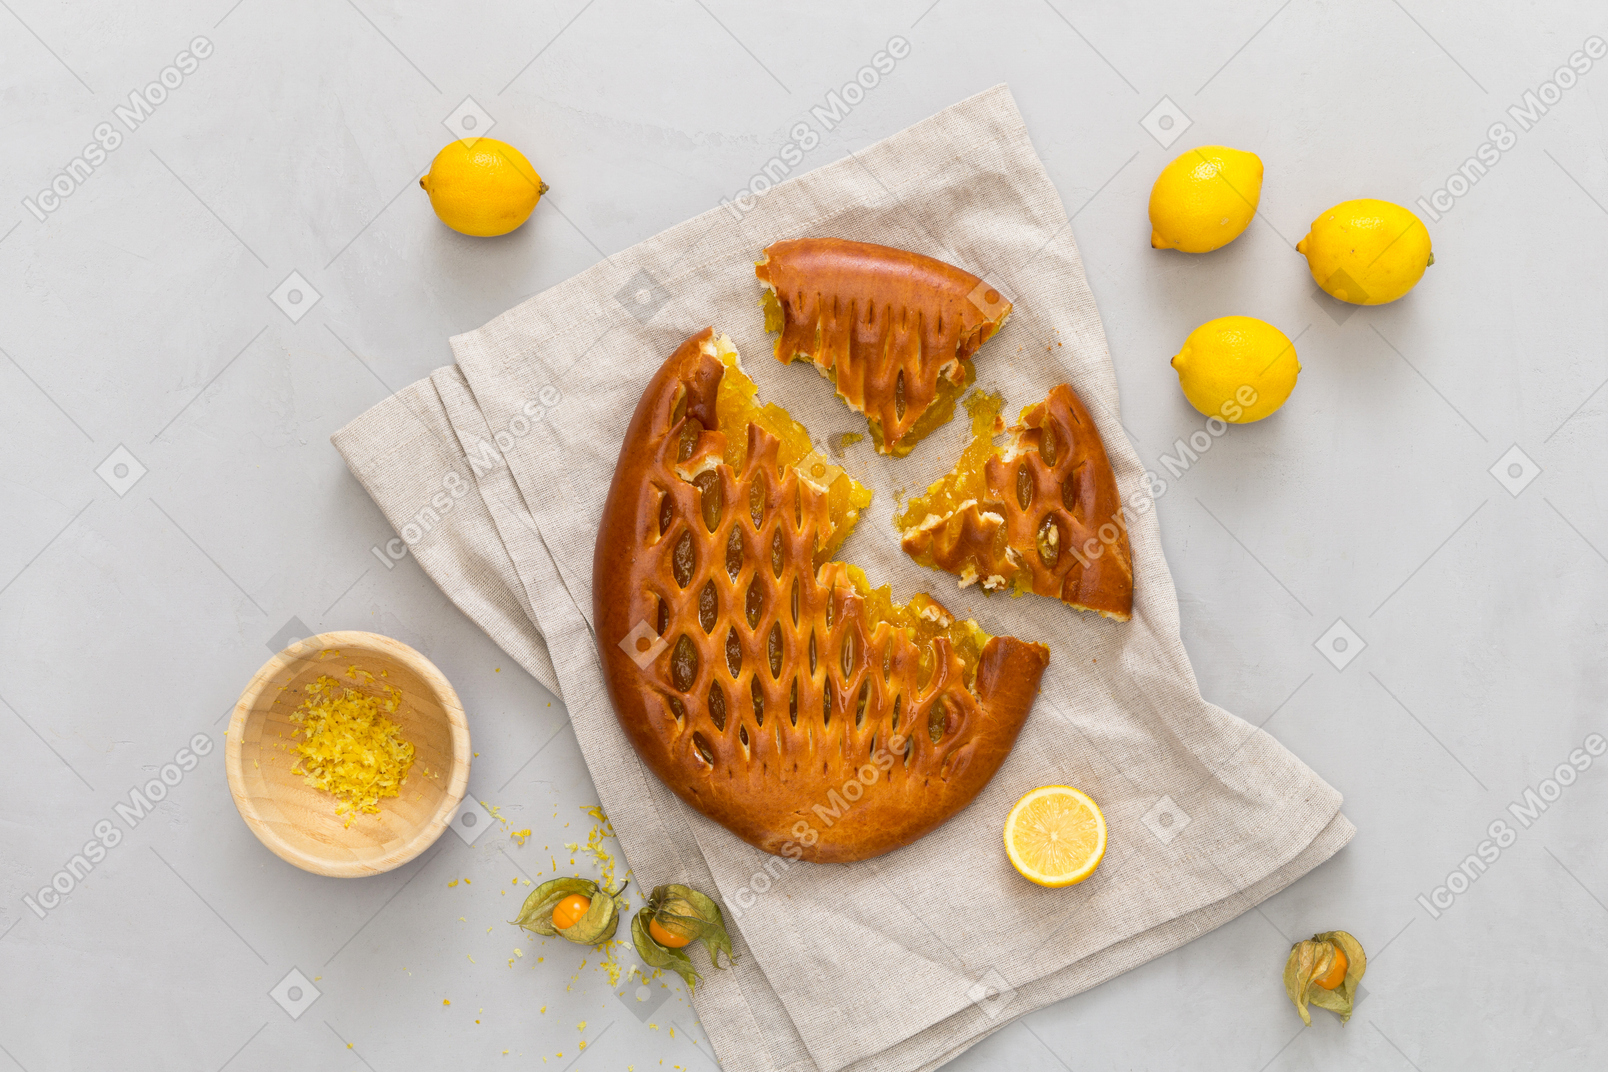 Lemon pie, lemons and lemon zest